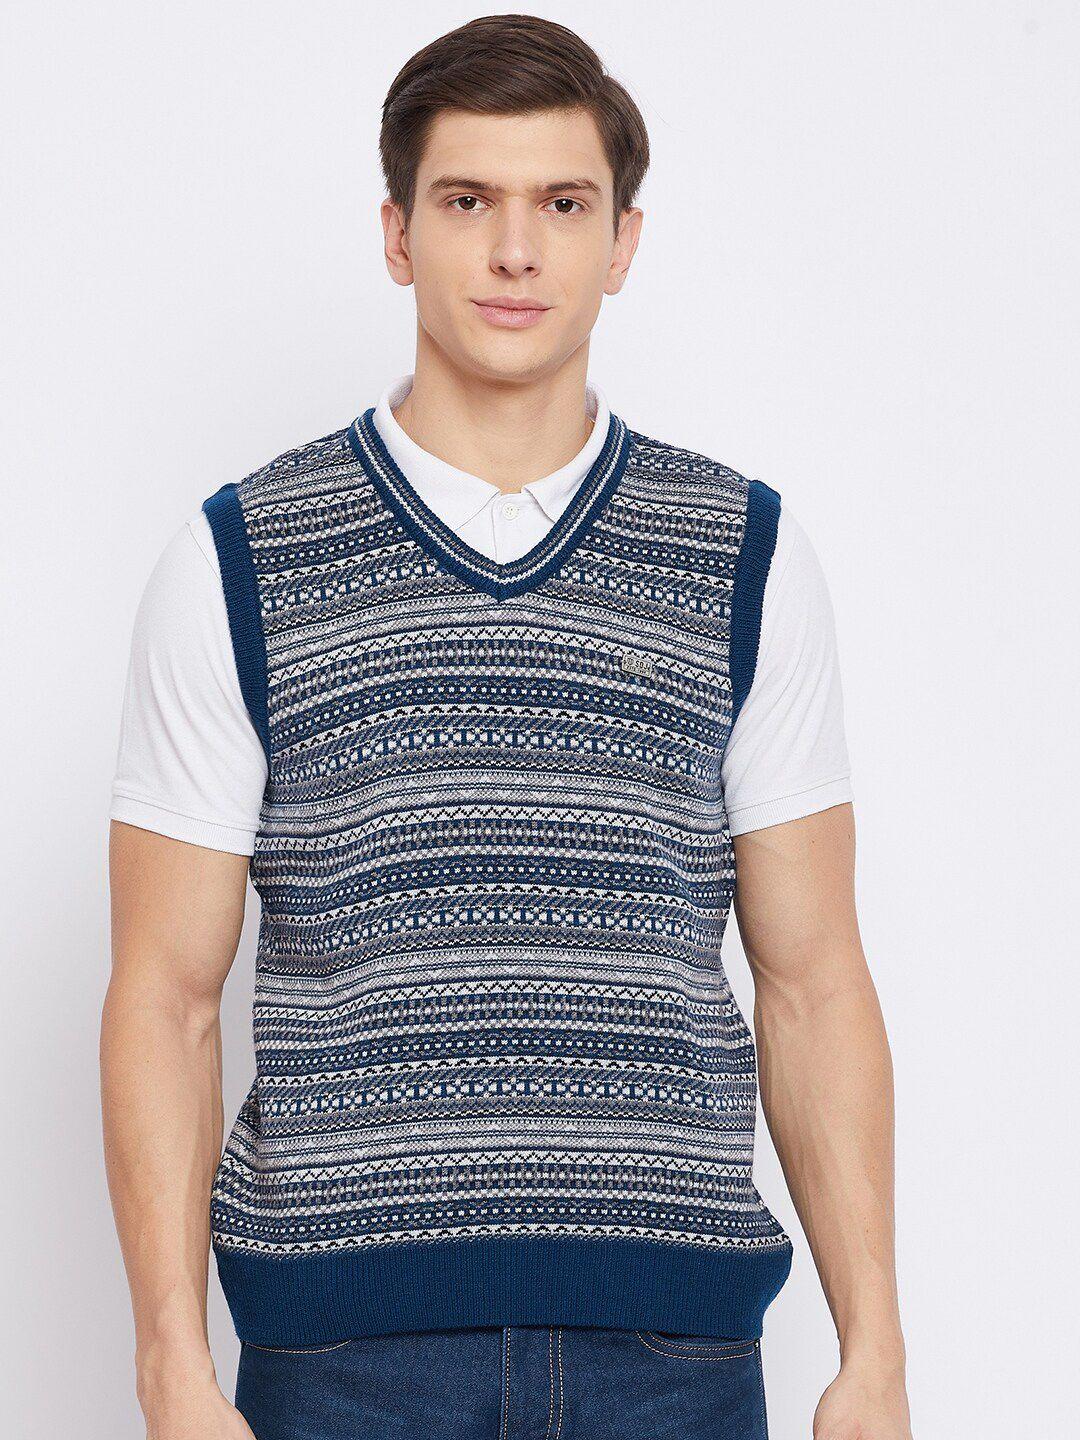 duke men blue & white striped sweater vest